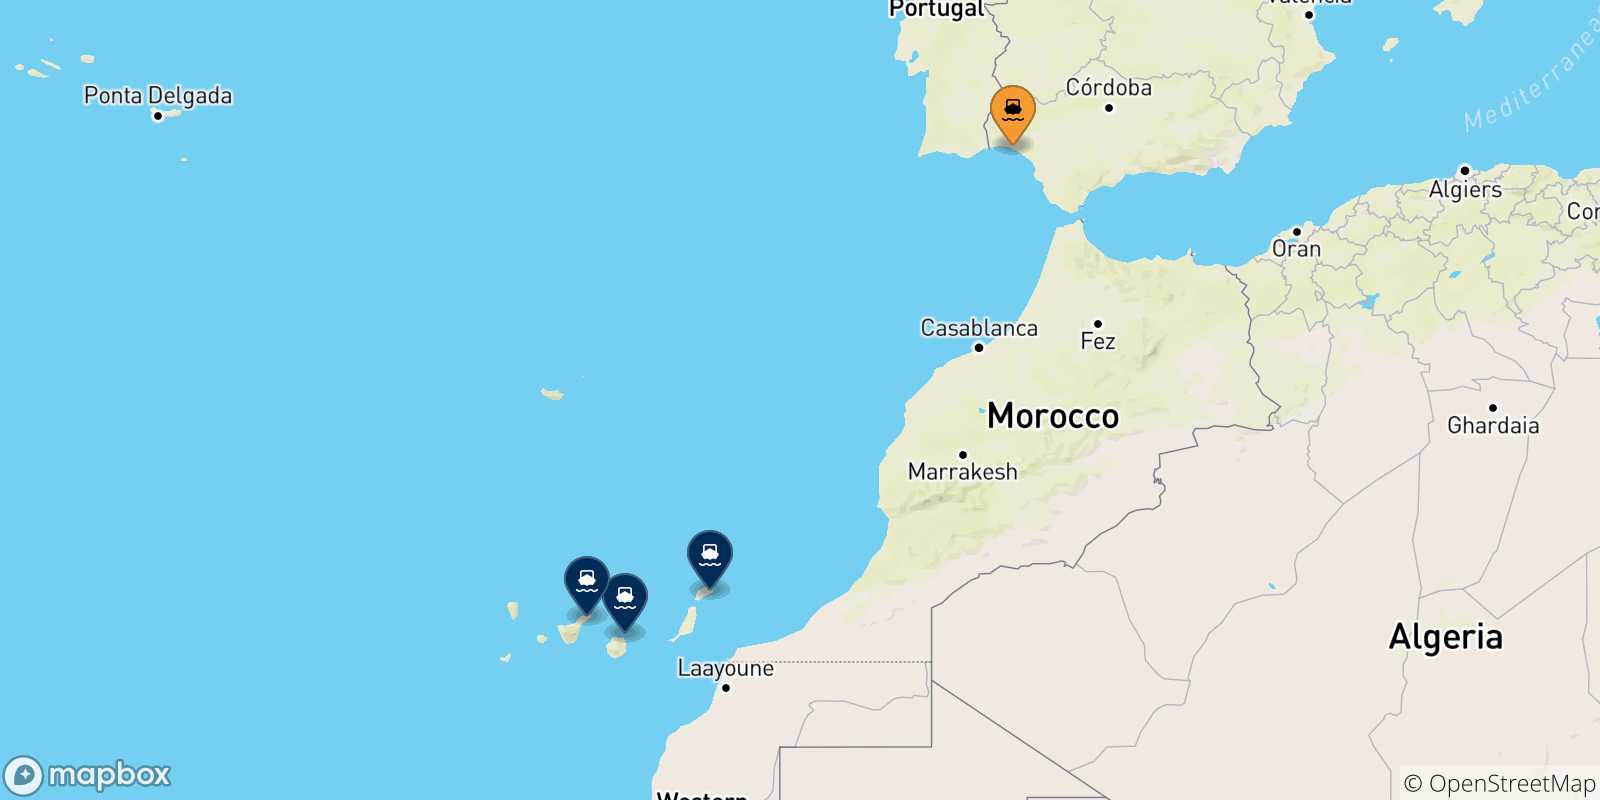 Mappa delle possibili rotte tra Huelva e le Isole Canarie